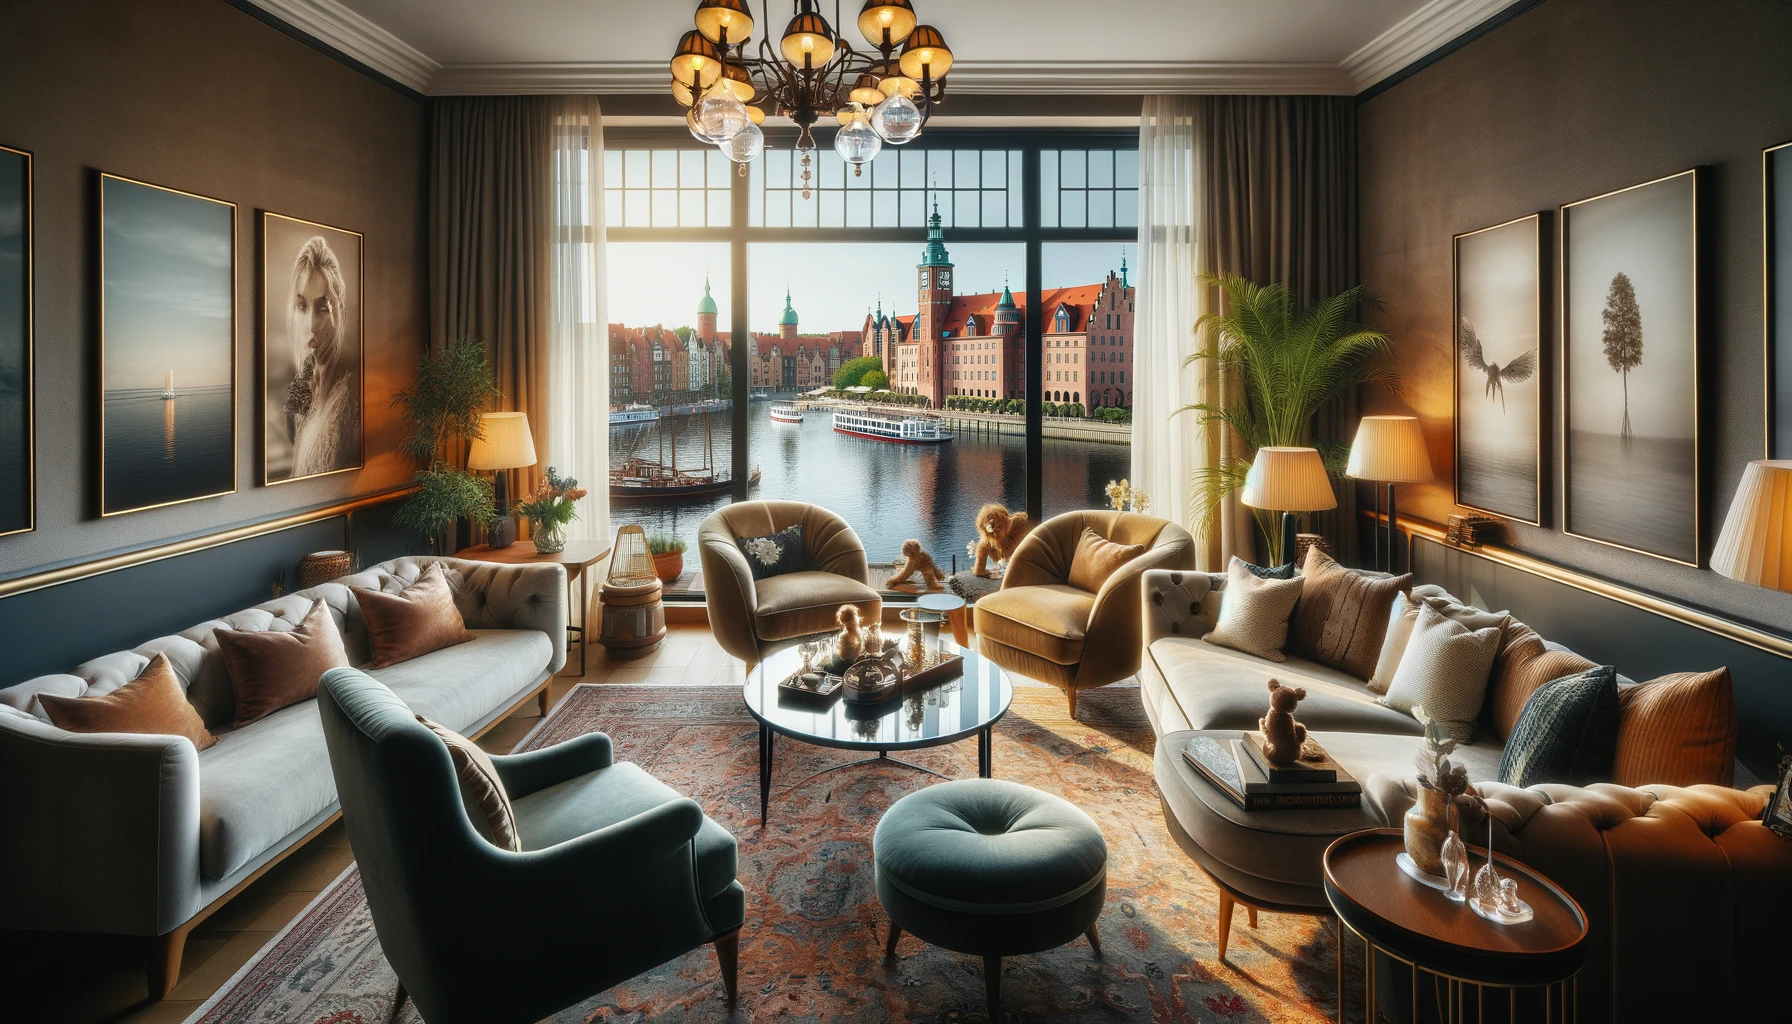 Eleganckie i przytulne wnętrze Hotelu Hanza w Gdańsku z widokiem na rzekę Motławę